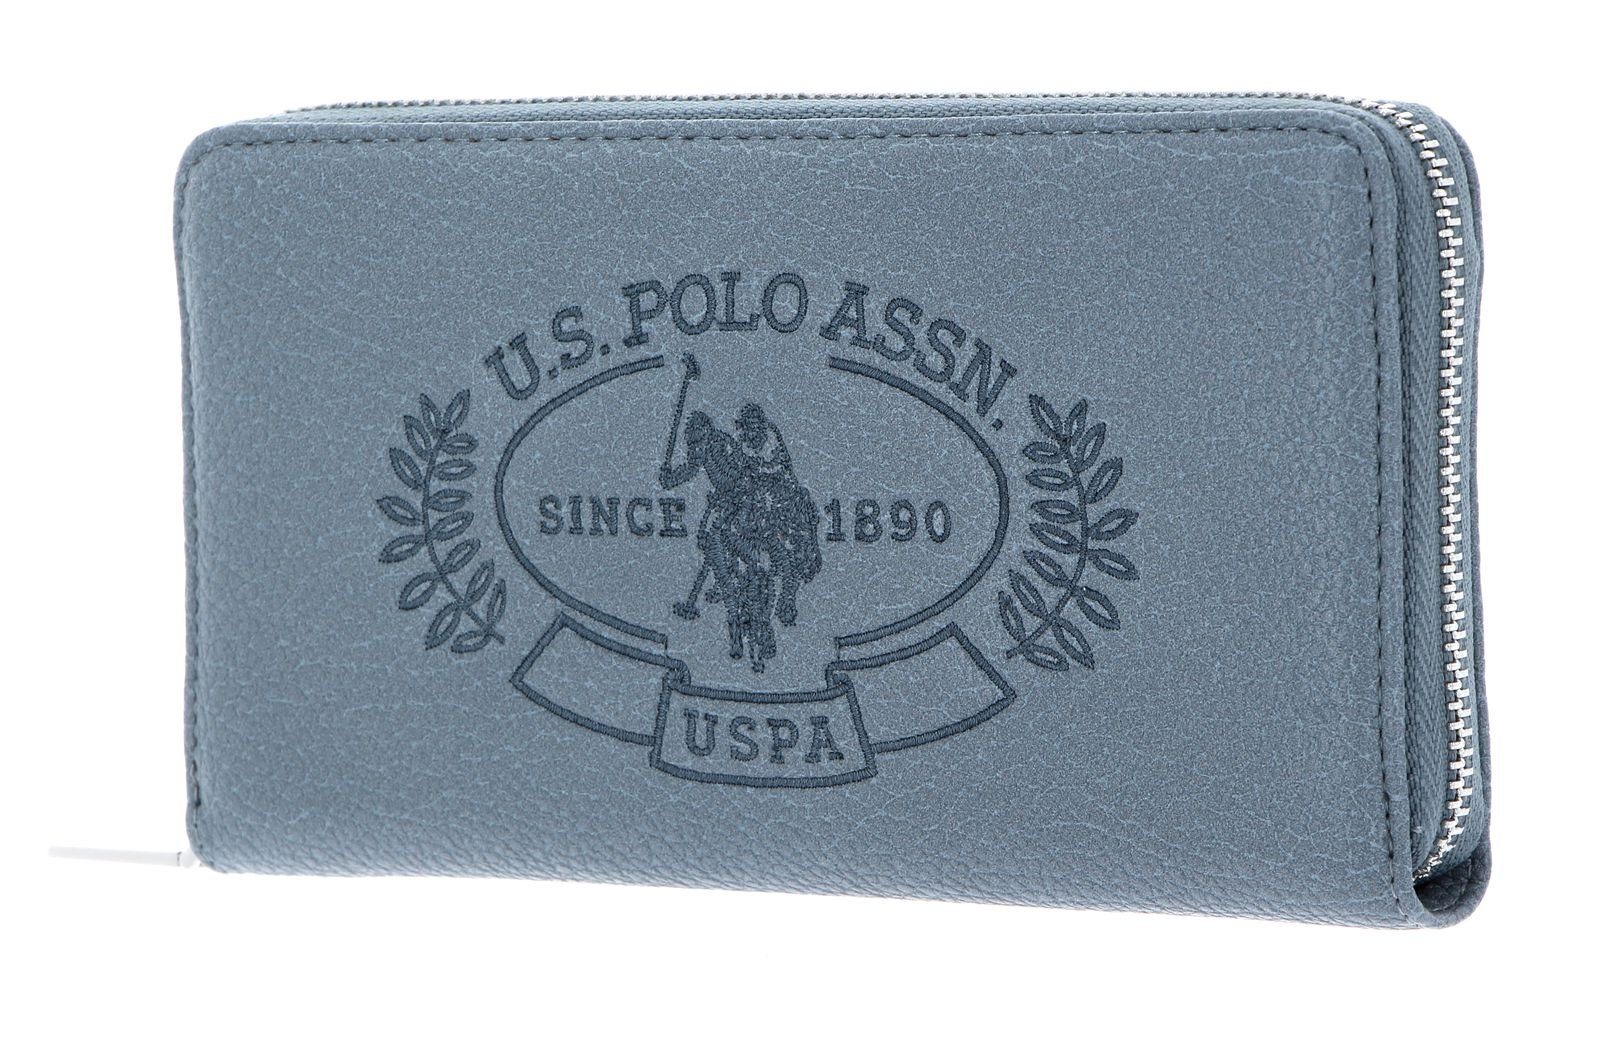 Hailey Assn Polo Blue Light Geldbörse U.S.